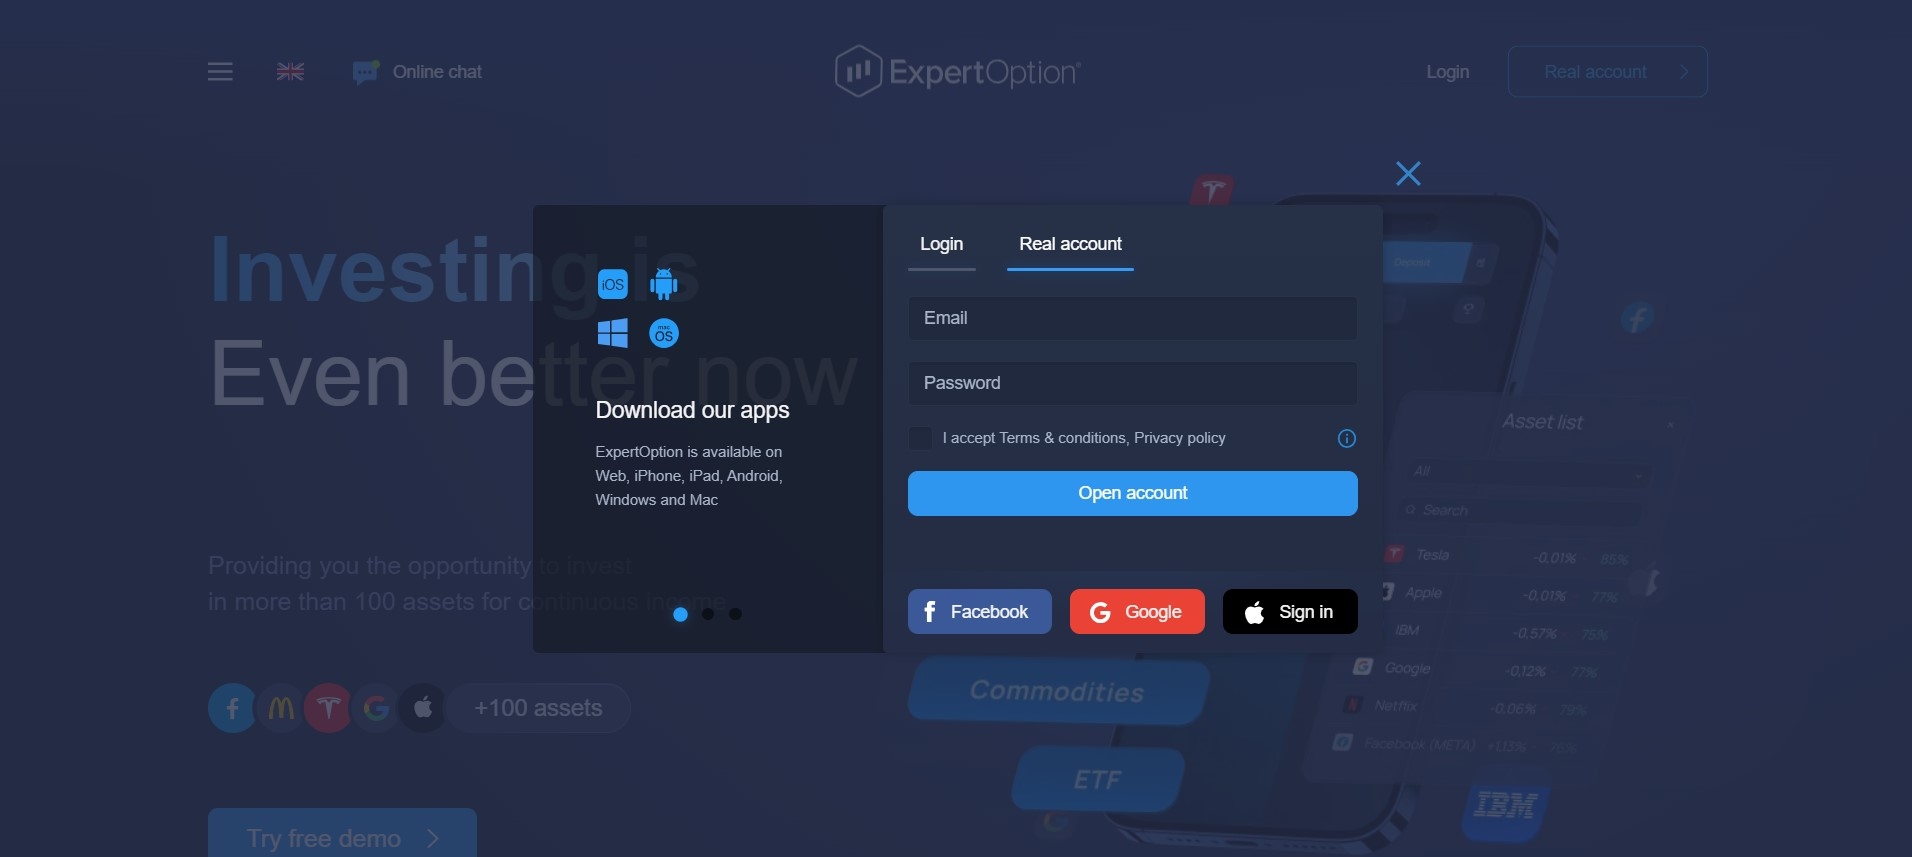 Registration on the Expert Option platform